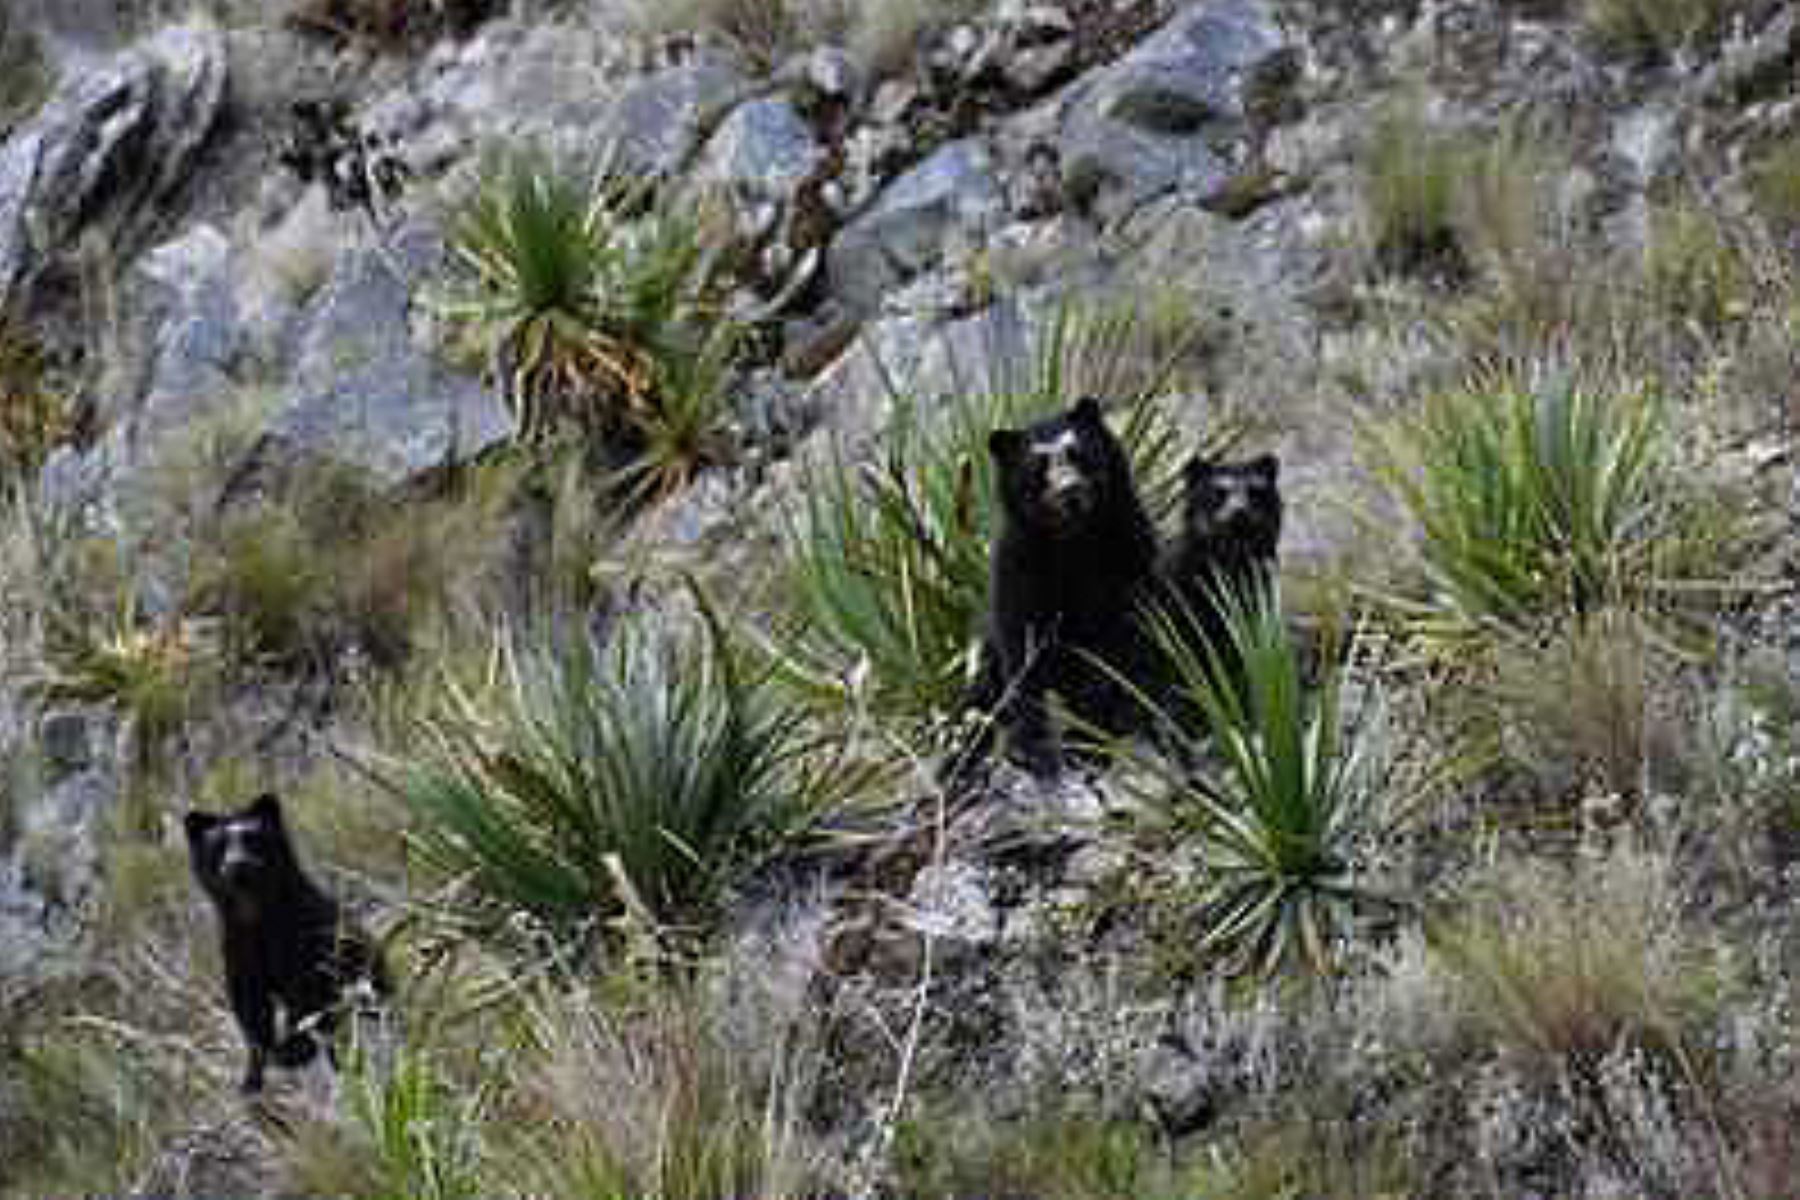 El oso de anteojos habita en más de 30 ANP como el santuario histórico de Machupicchu y el parque nacional del Manu. Foto: ANDINA/Difusión